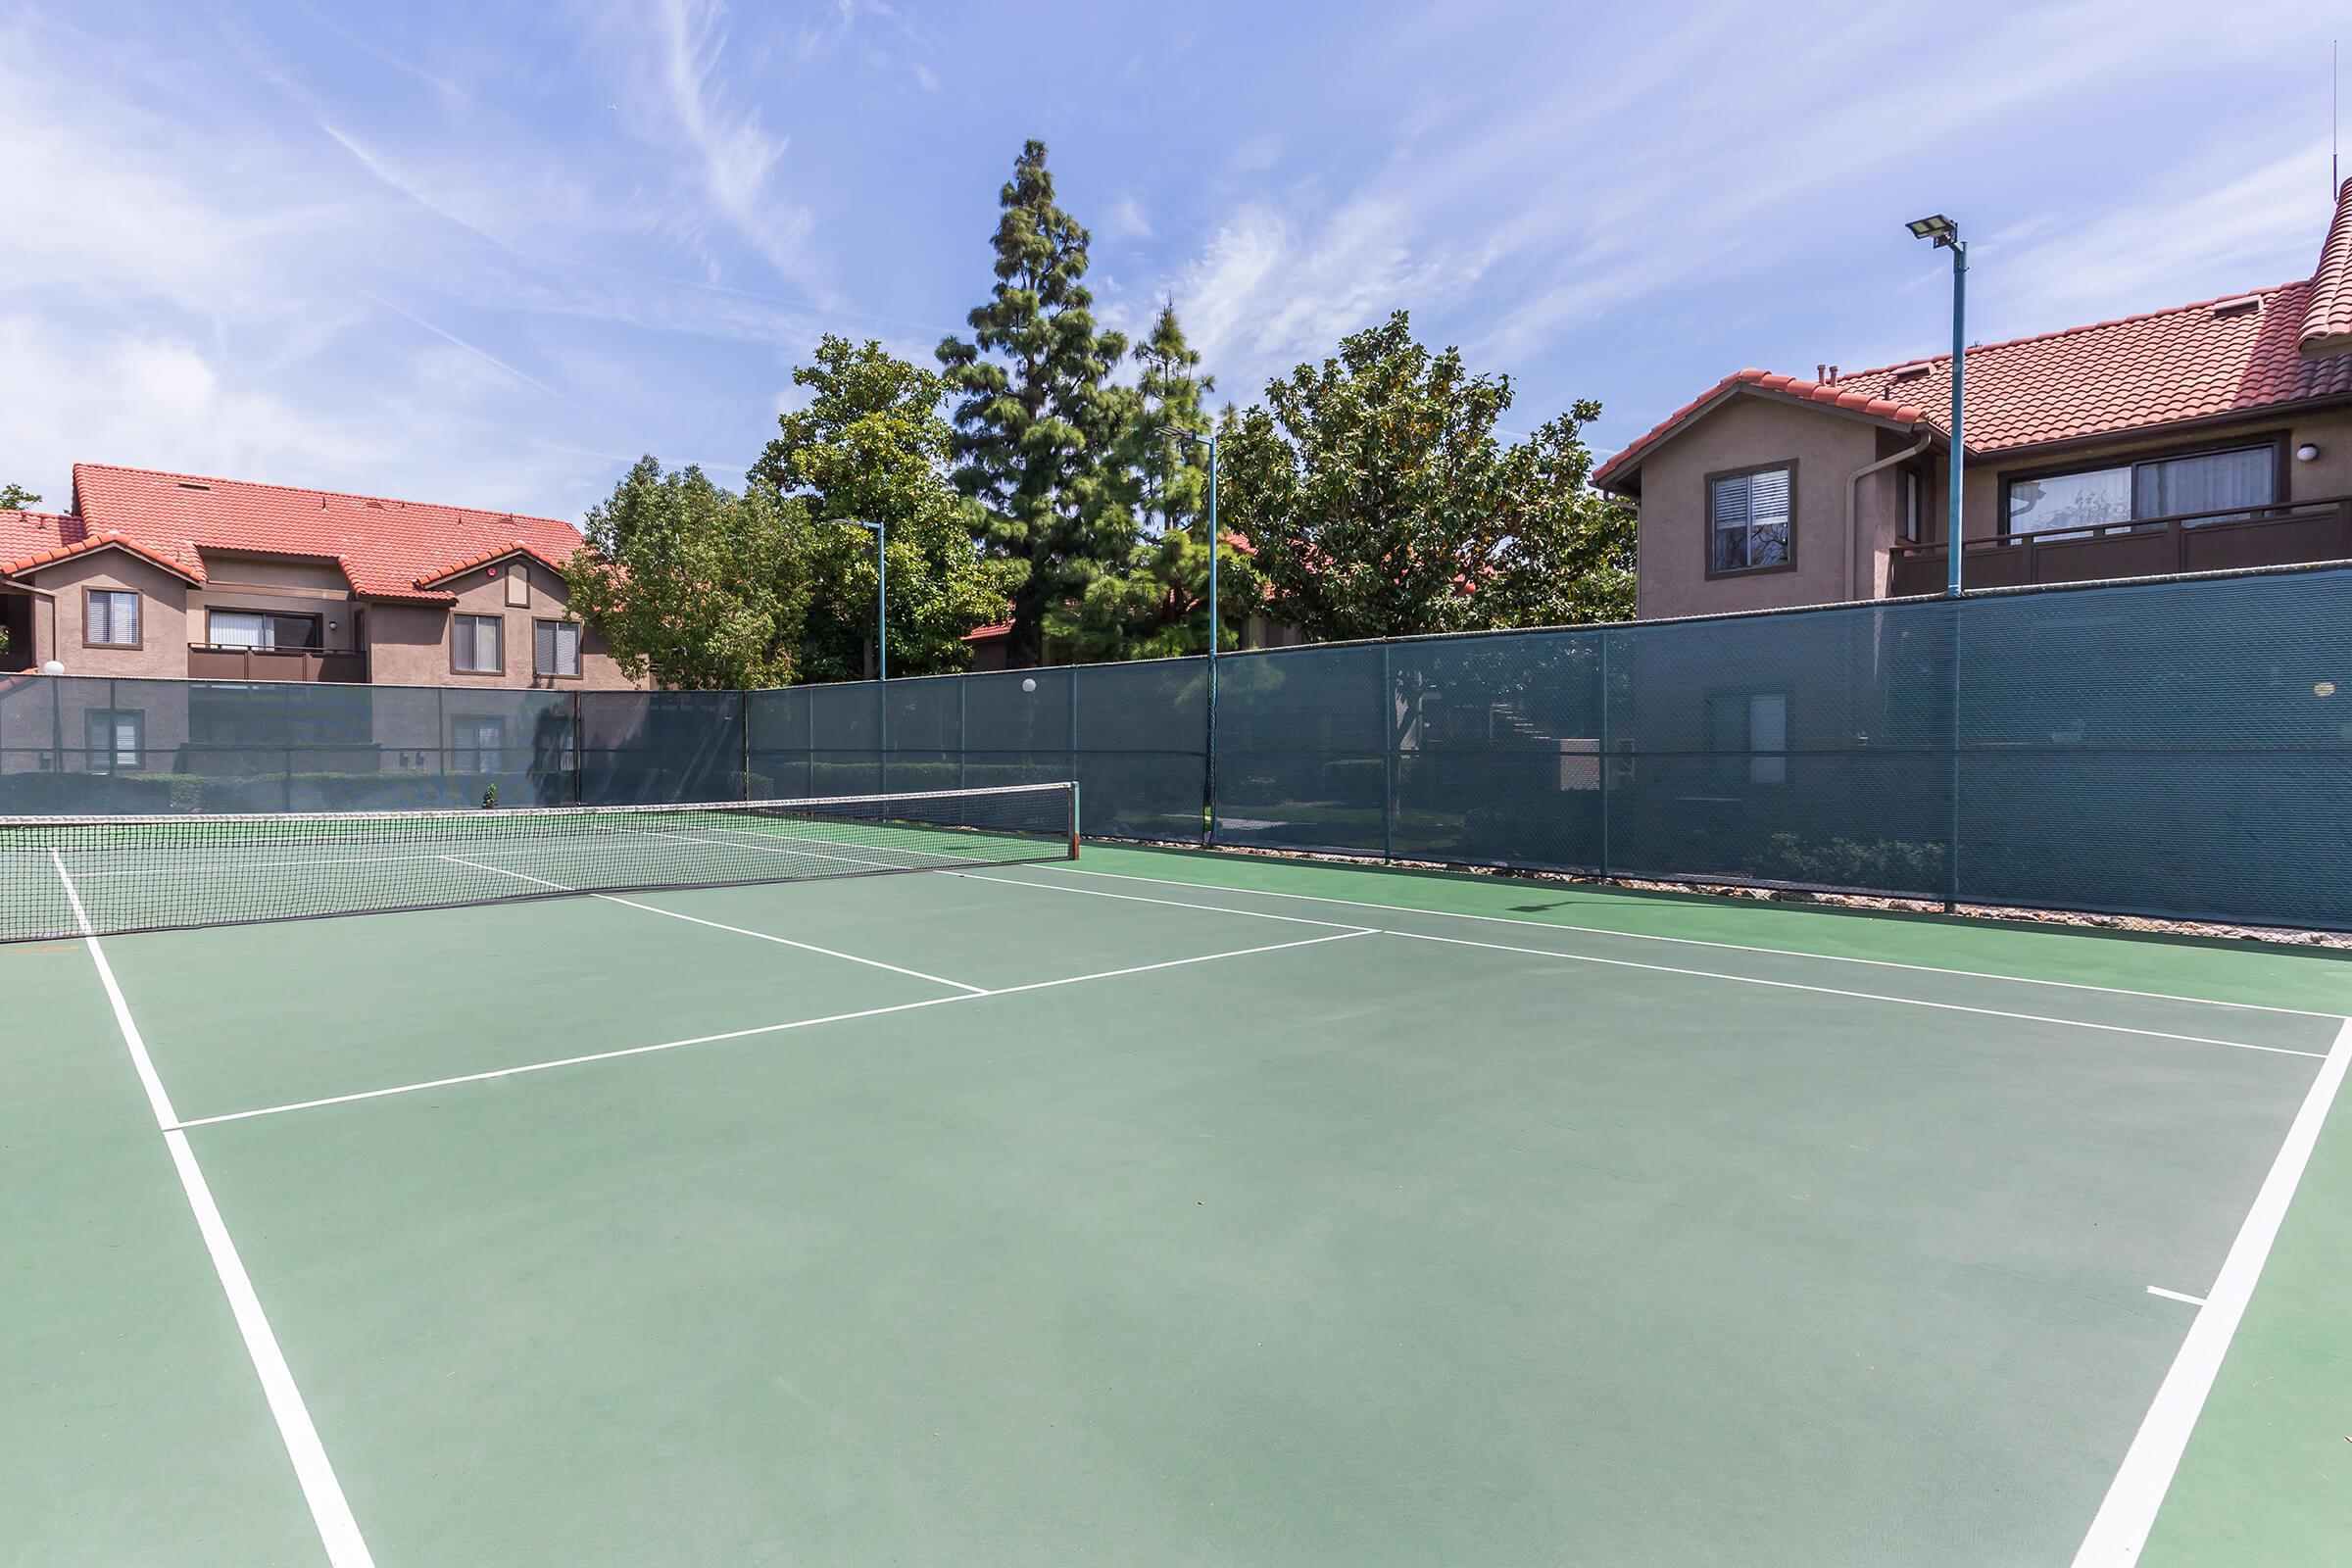 Park Centre Apartment Homes tennis court